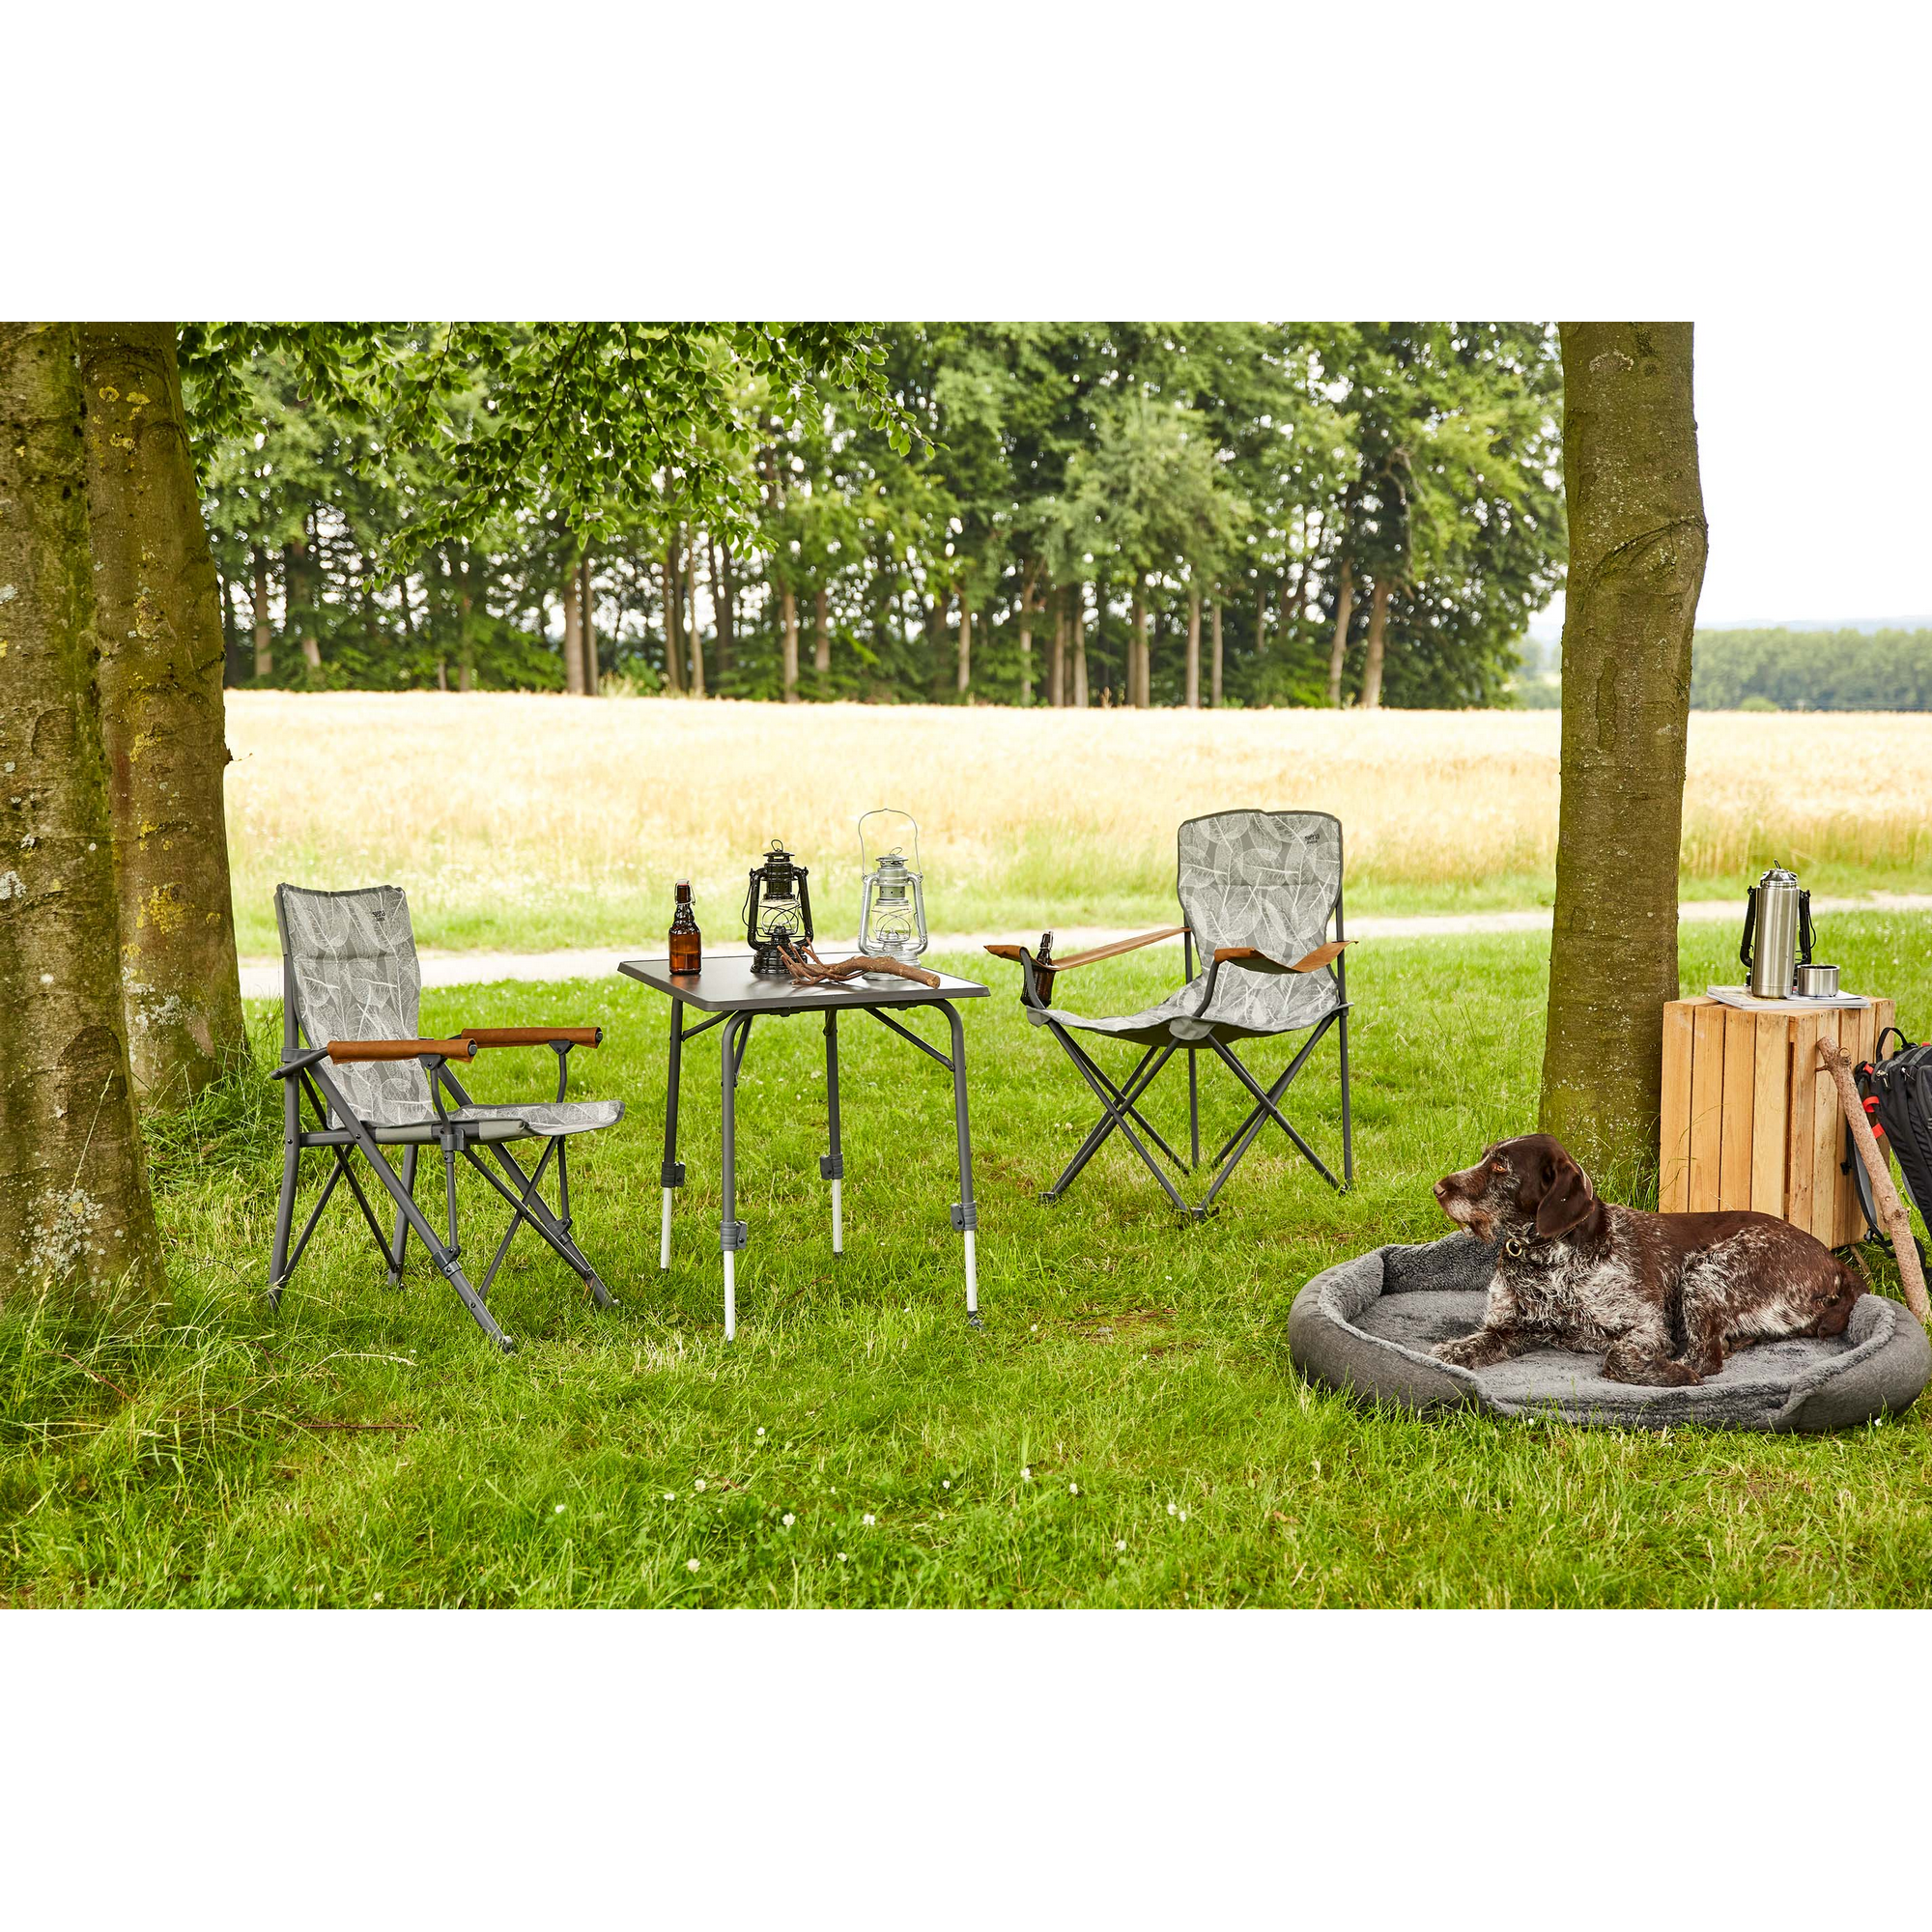 Camping-Regiestuhl 'Natura' grau 73 x 55 x 99 cm + product picture